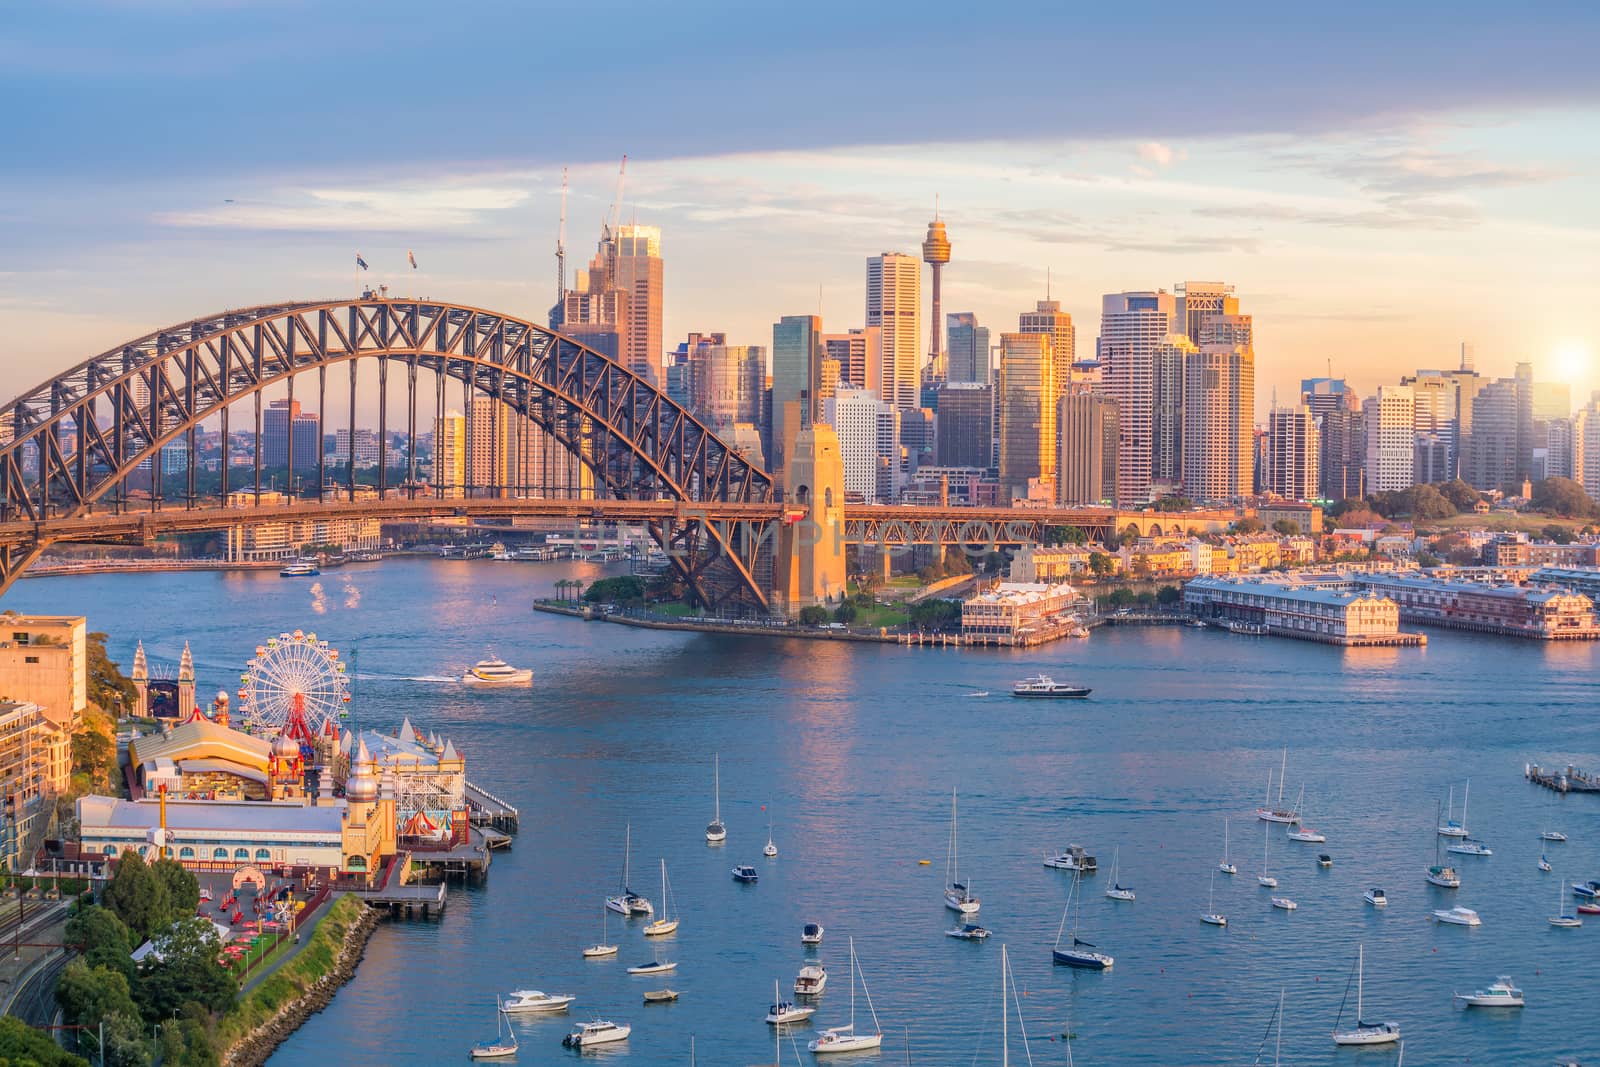 Downtown Sydney skyline in Australia by f11photo